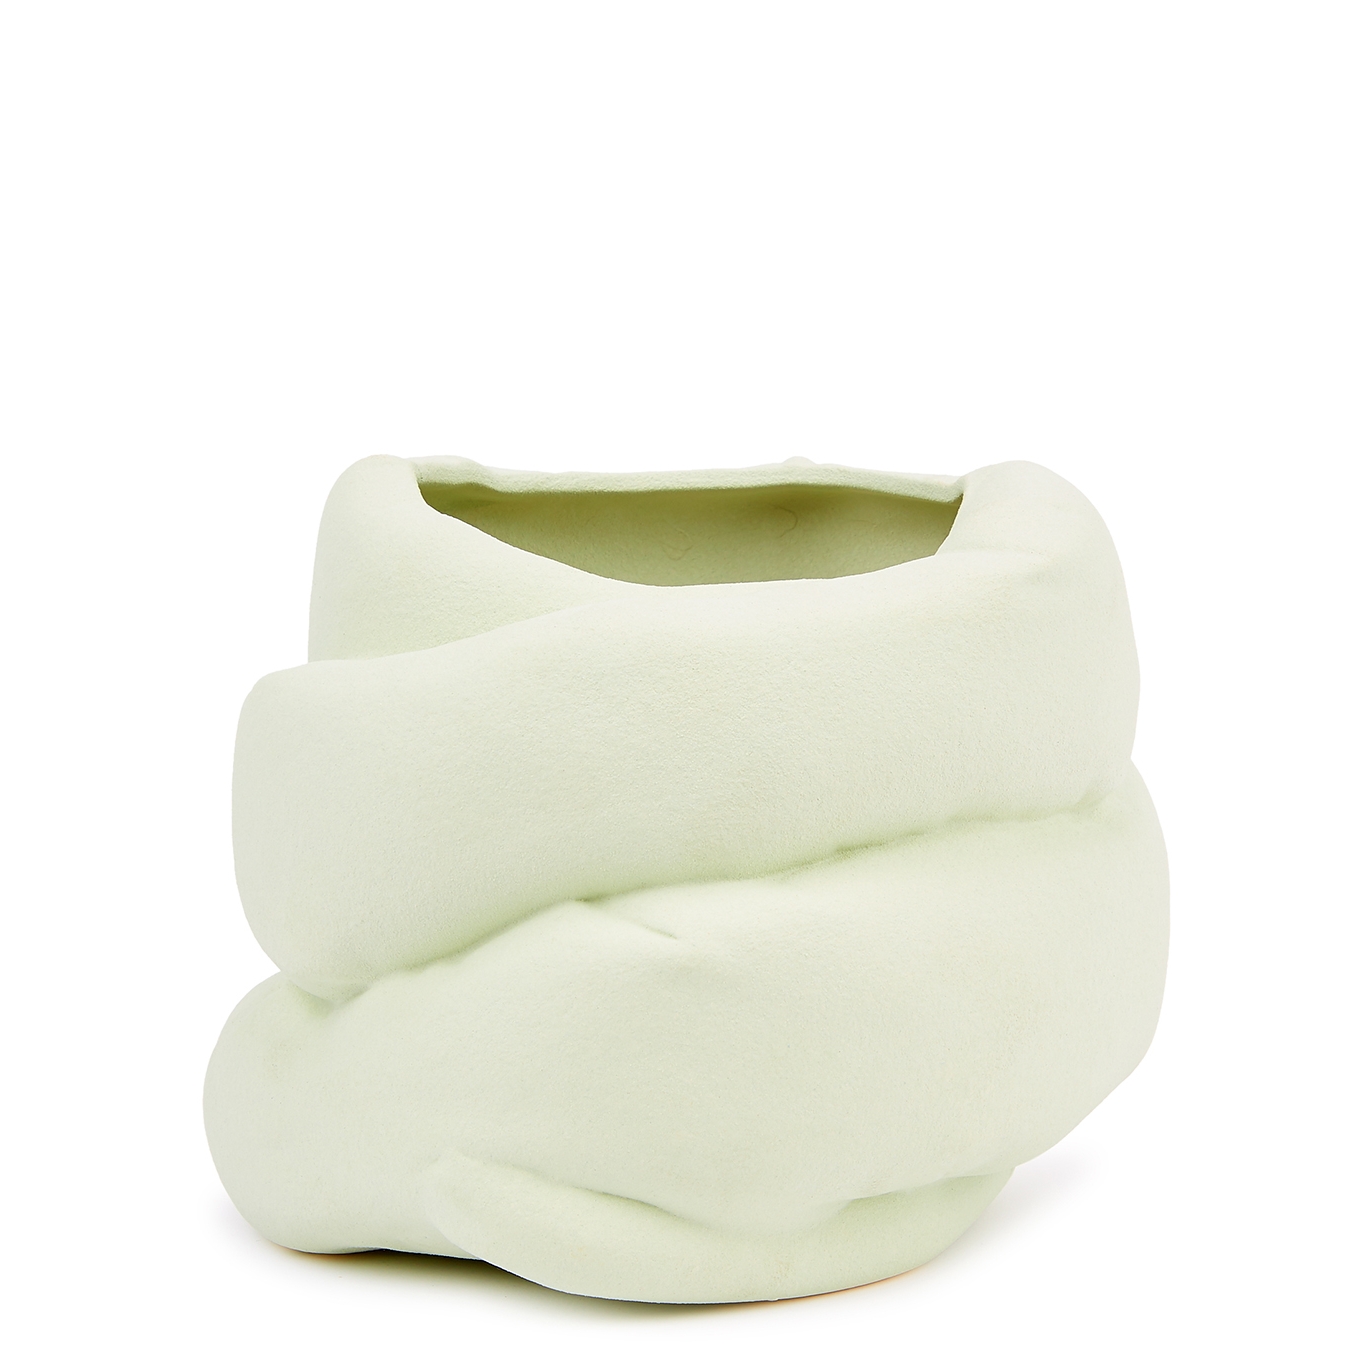 Completedworks Home Large Mint Ceramic Vase